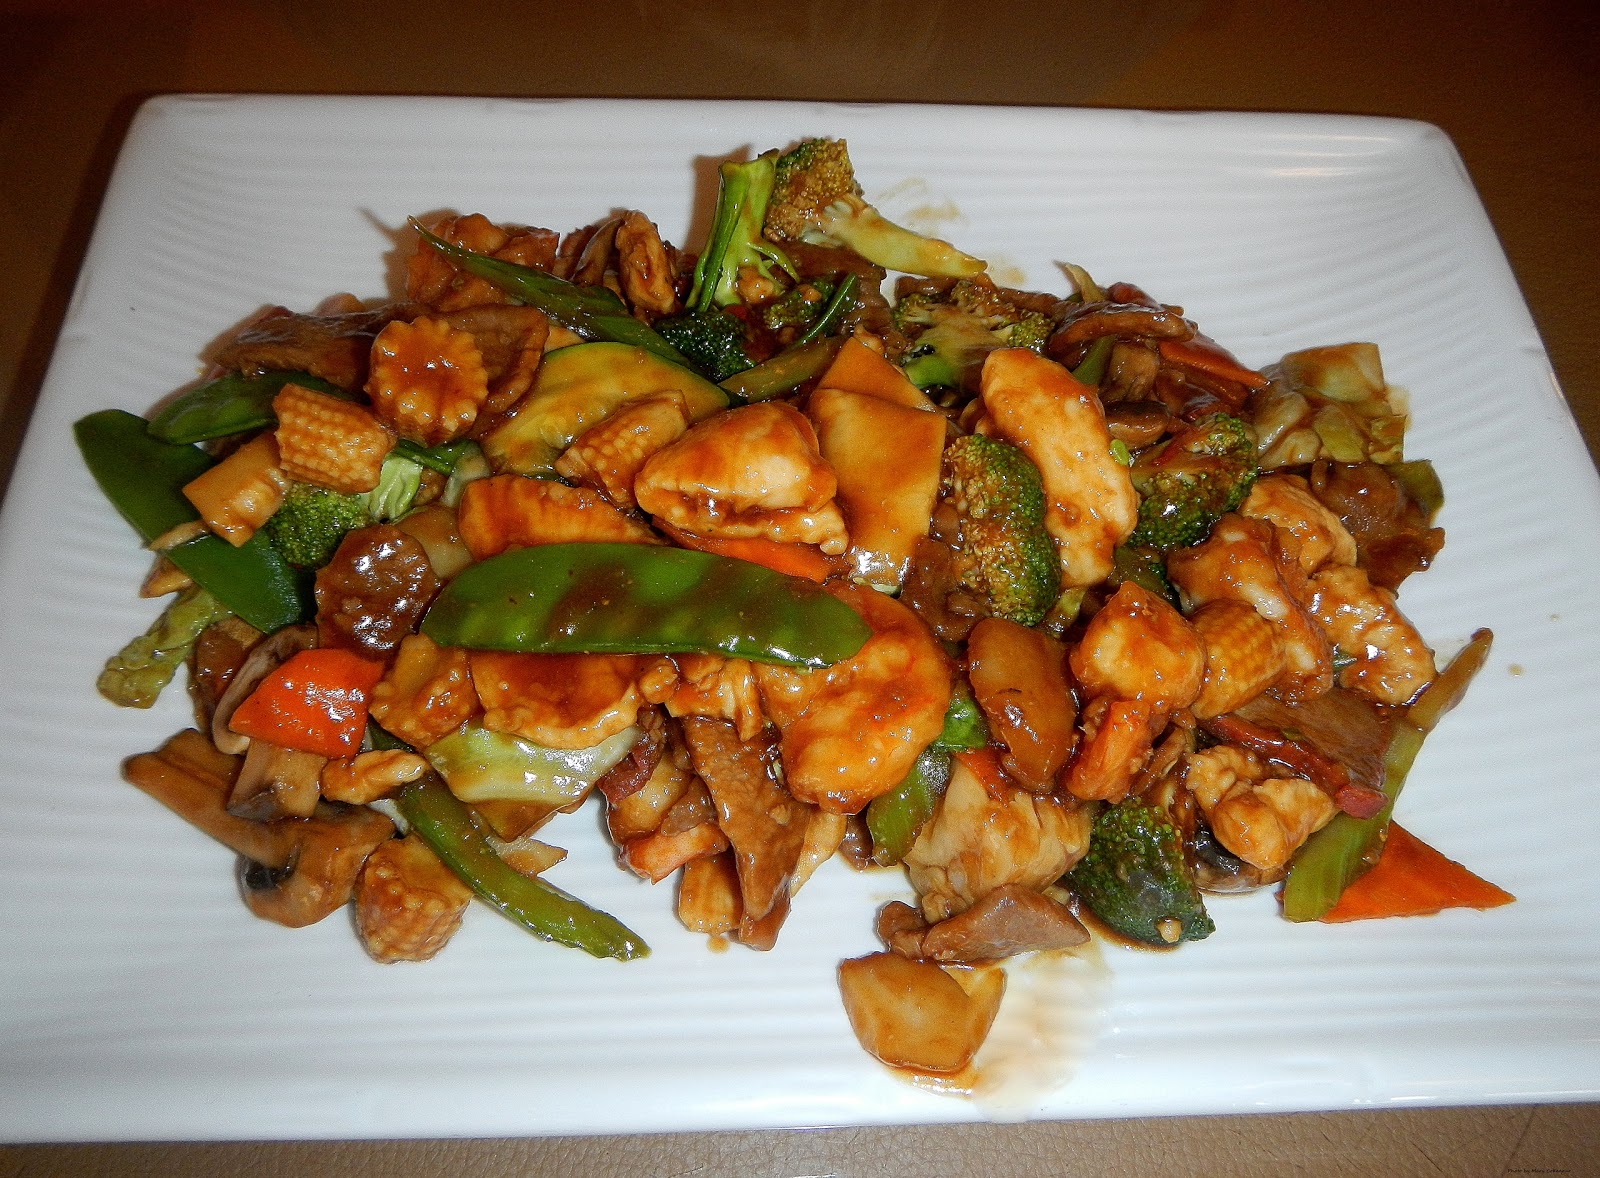 Food Adventures of a Comfort Cook: Hunan in Cortez is ...